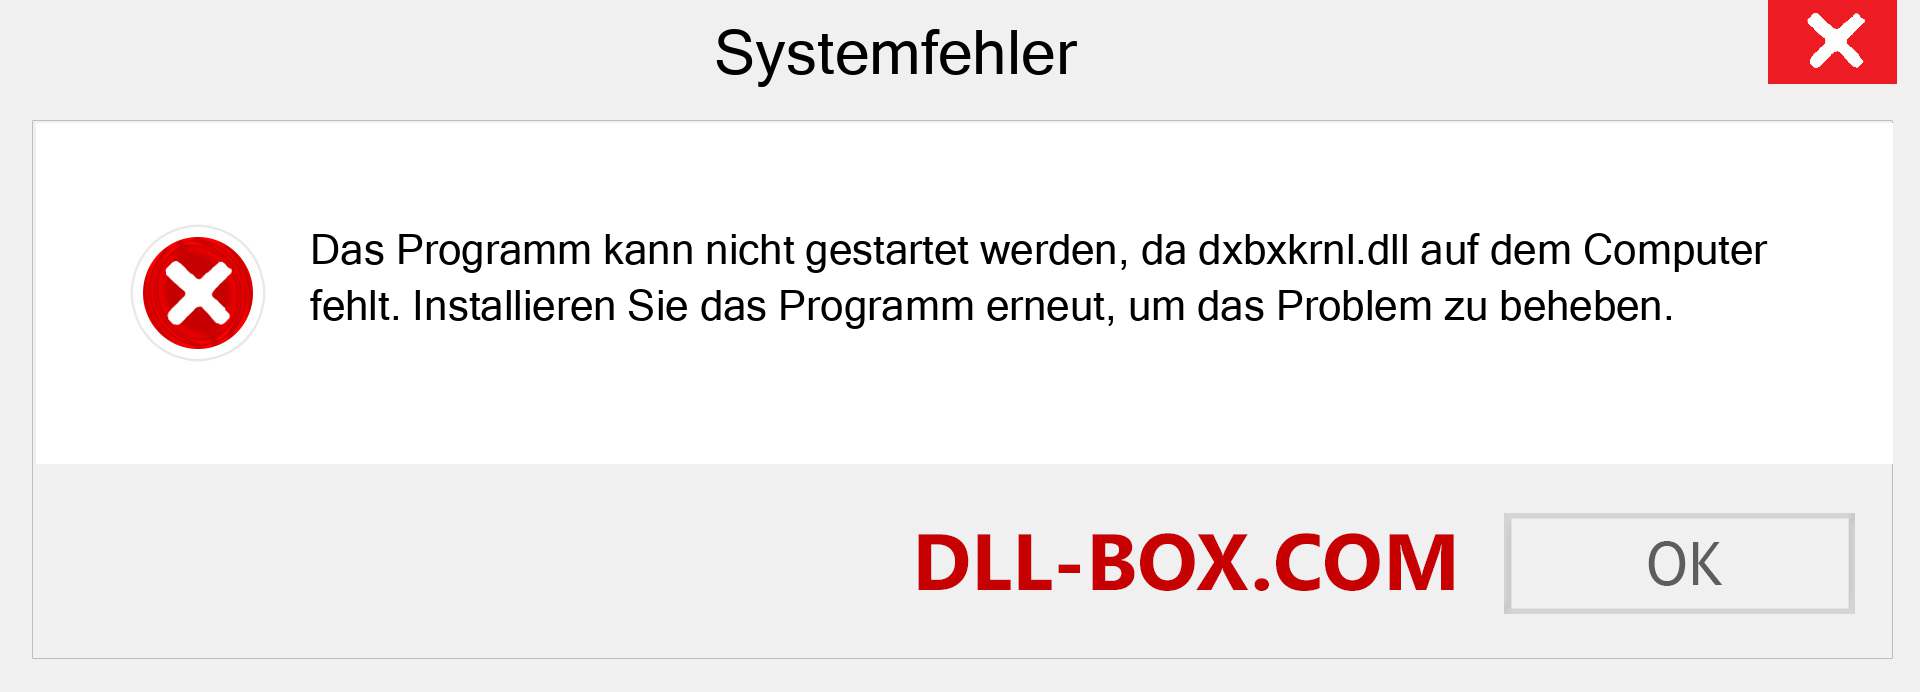 dxbxkrnl.dll-Datei fehlt?. Download für Windows 7, 8, 10 - Fix dxbxkrnl dll Missing Error unter Windows, Fotos, Bildern